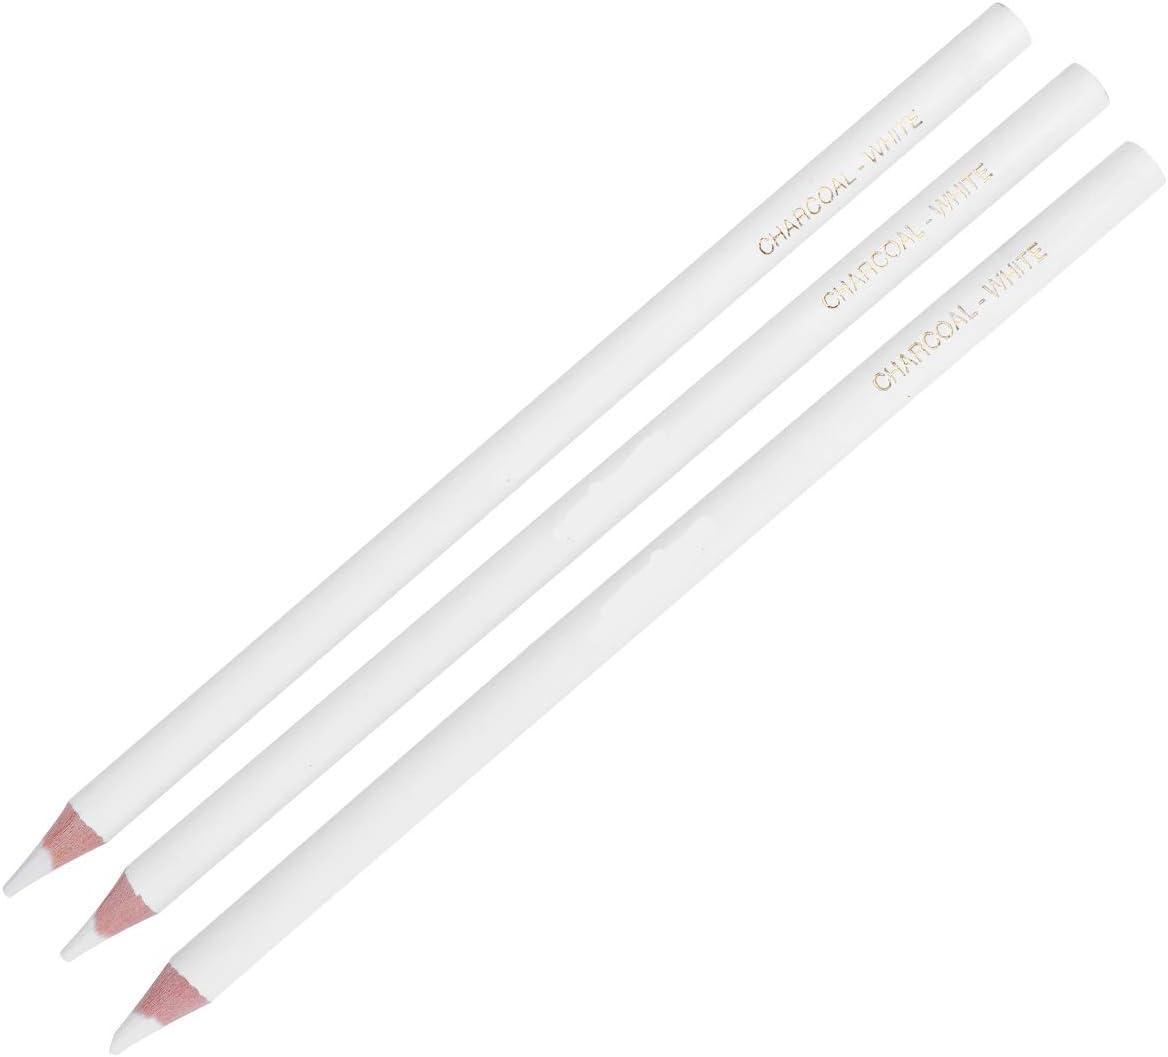 3pcs Art Supplies Charcoal Sketching Pencils Art Pencils Graphite